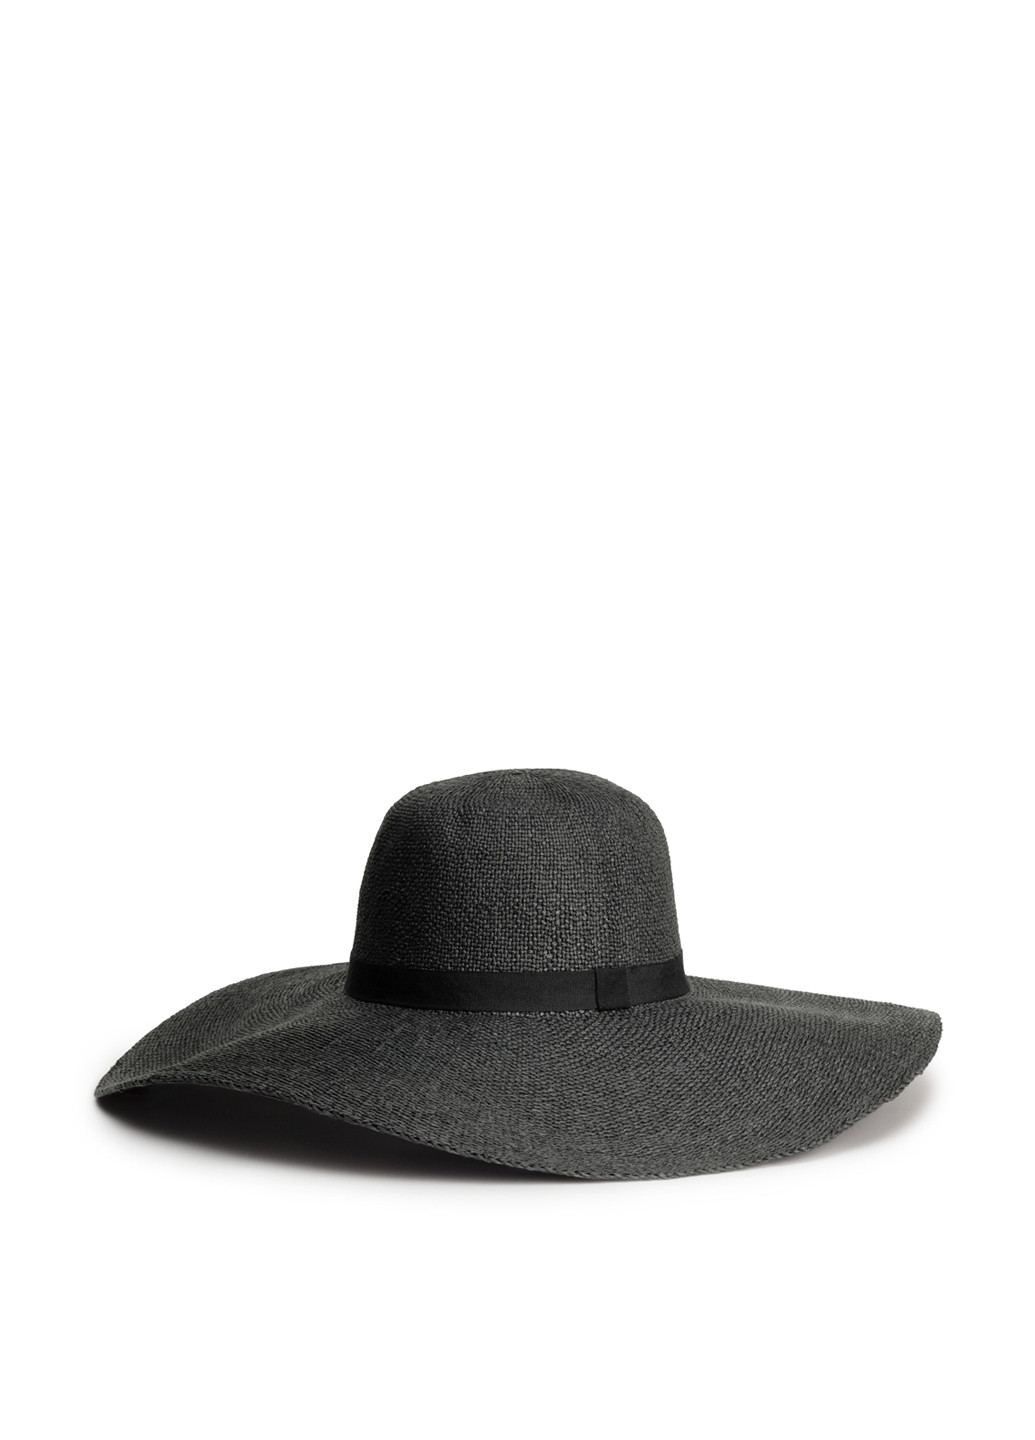 Шляпа H&M широкополая однотонная чёрная кэжуал искусственная солома